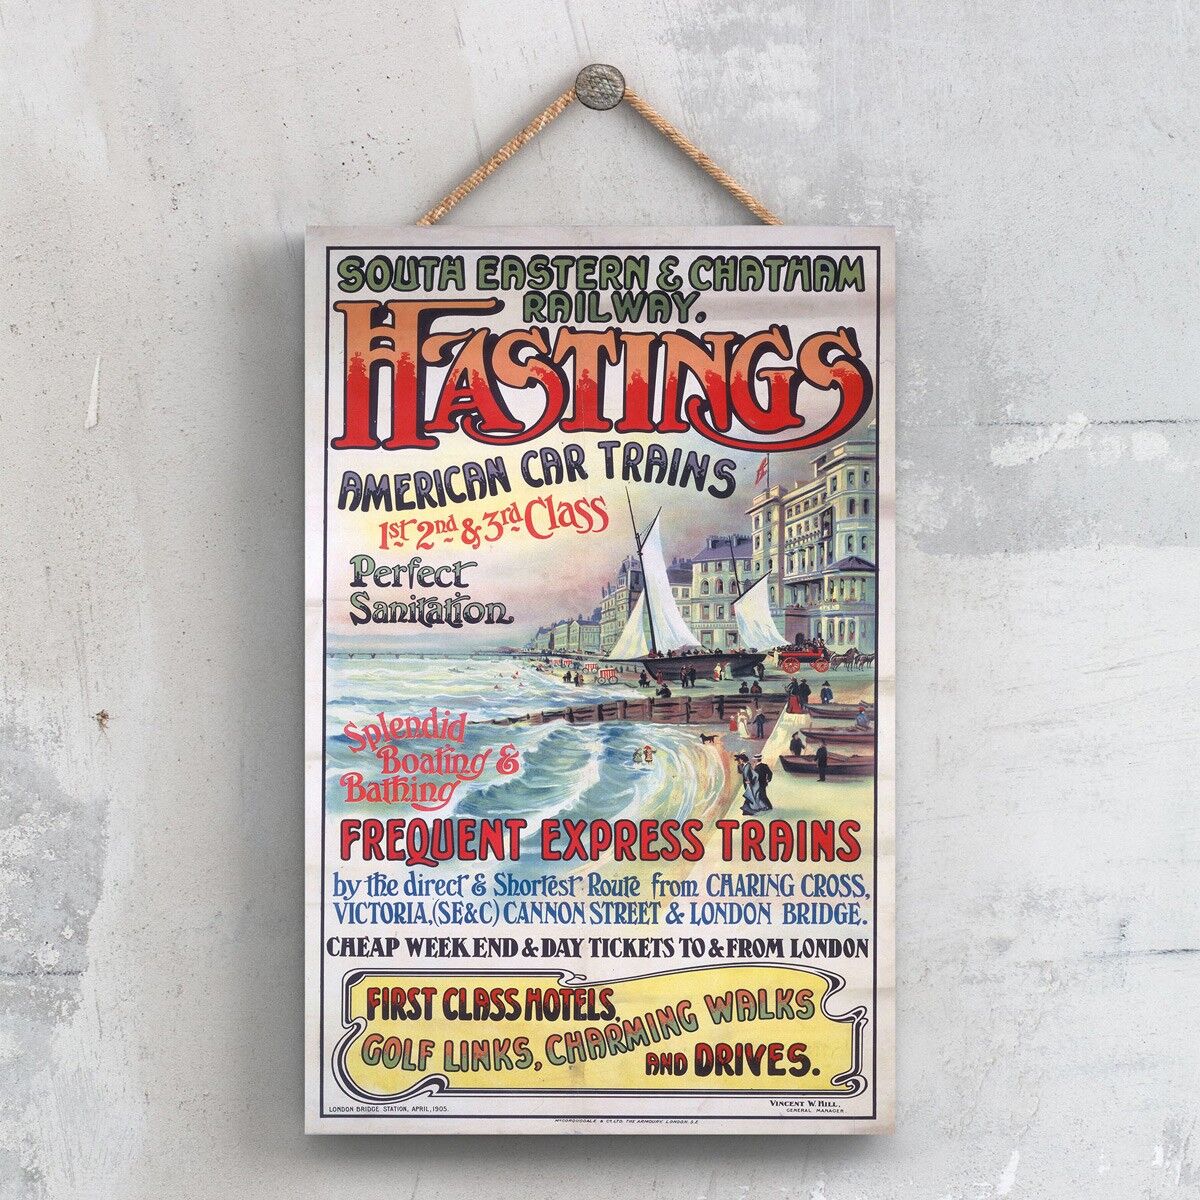 P0430 - Hastings American Car Trains Poster originale delle ferrovie nazionali su una targa con decorazioni vintage